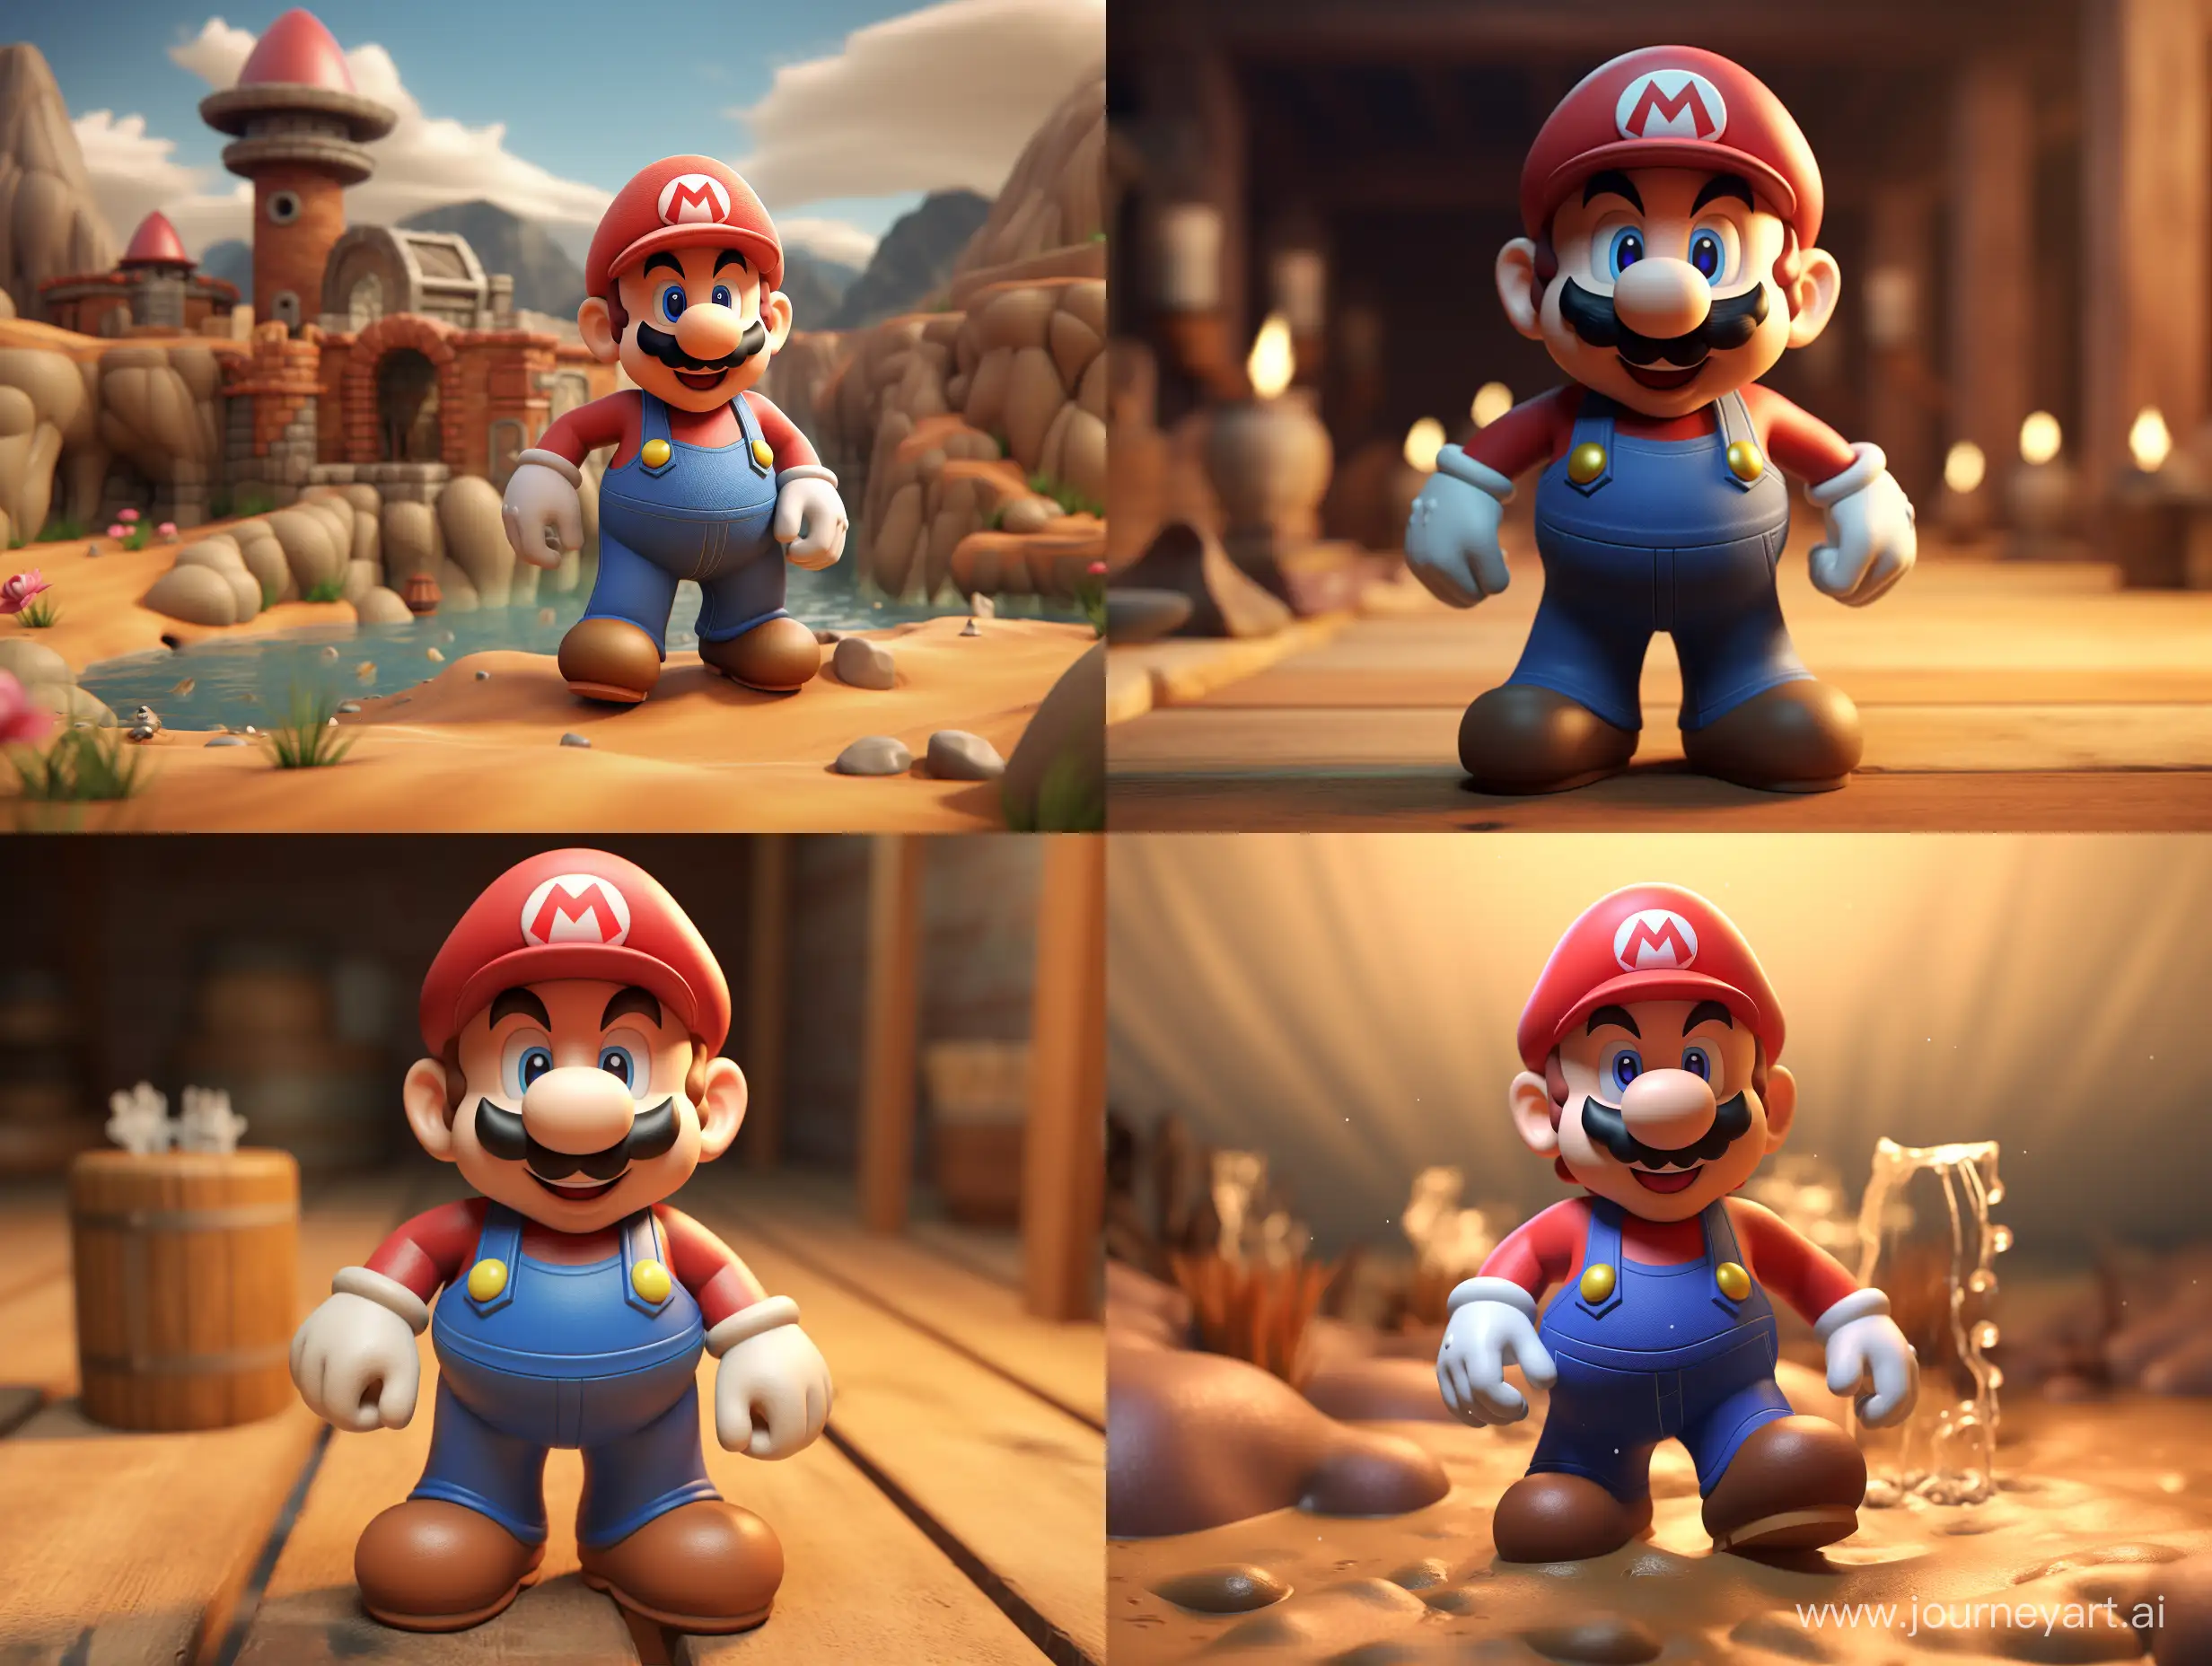 Mario-in-Vibrant-3D-Rendering-Classic-Adventure-in-43-Aspect-Ratio